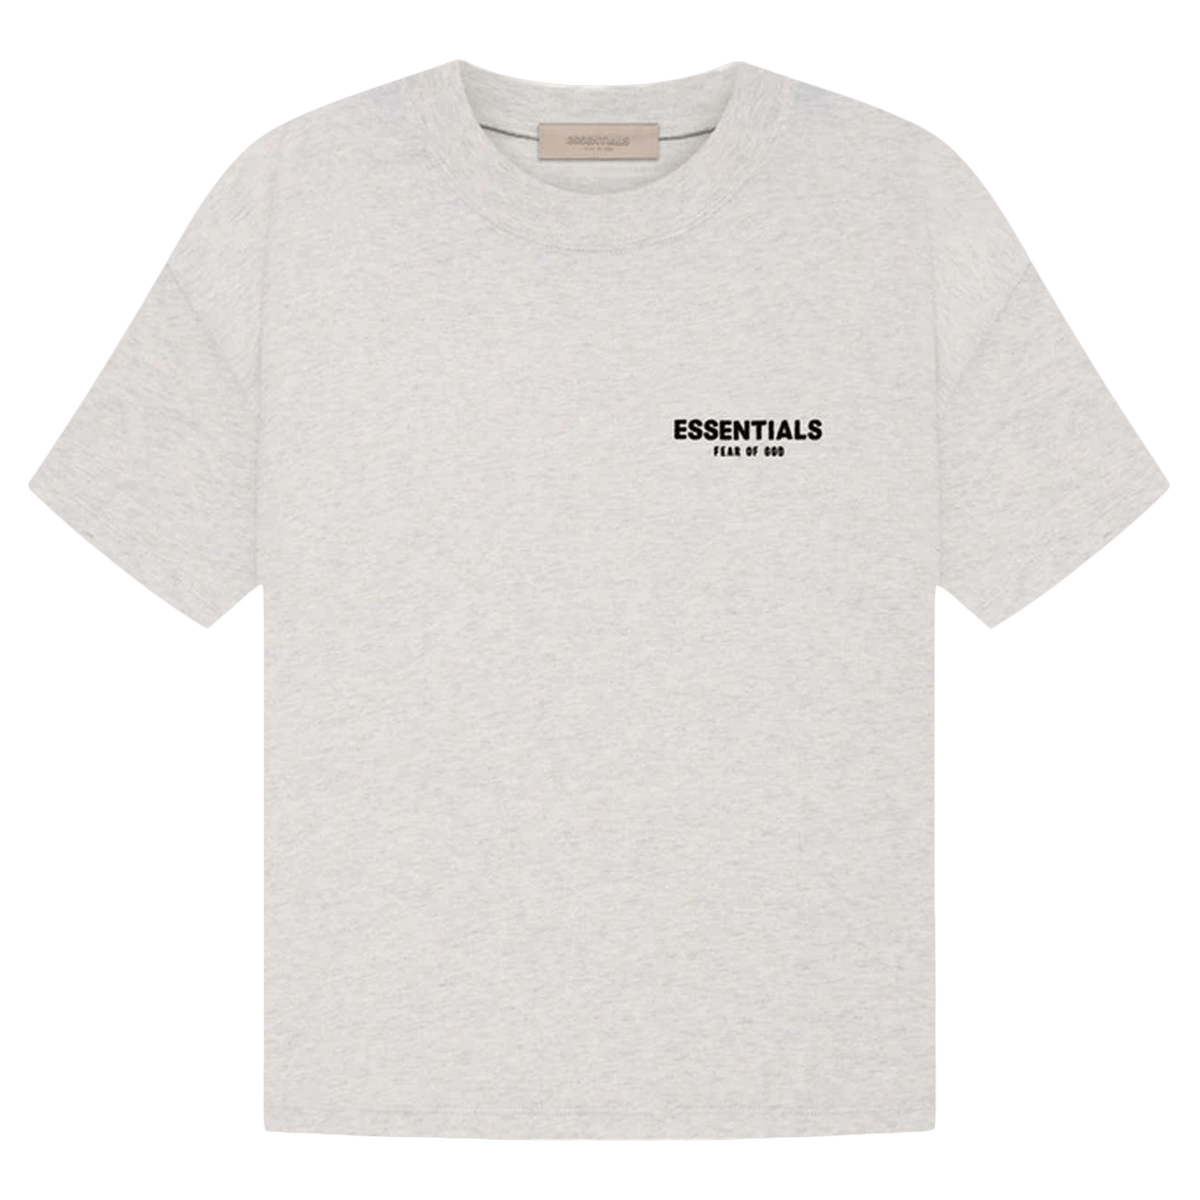 Fear of God Essentials T-shirt 'Light Oatmeal' - CerbeShops